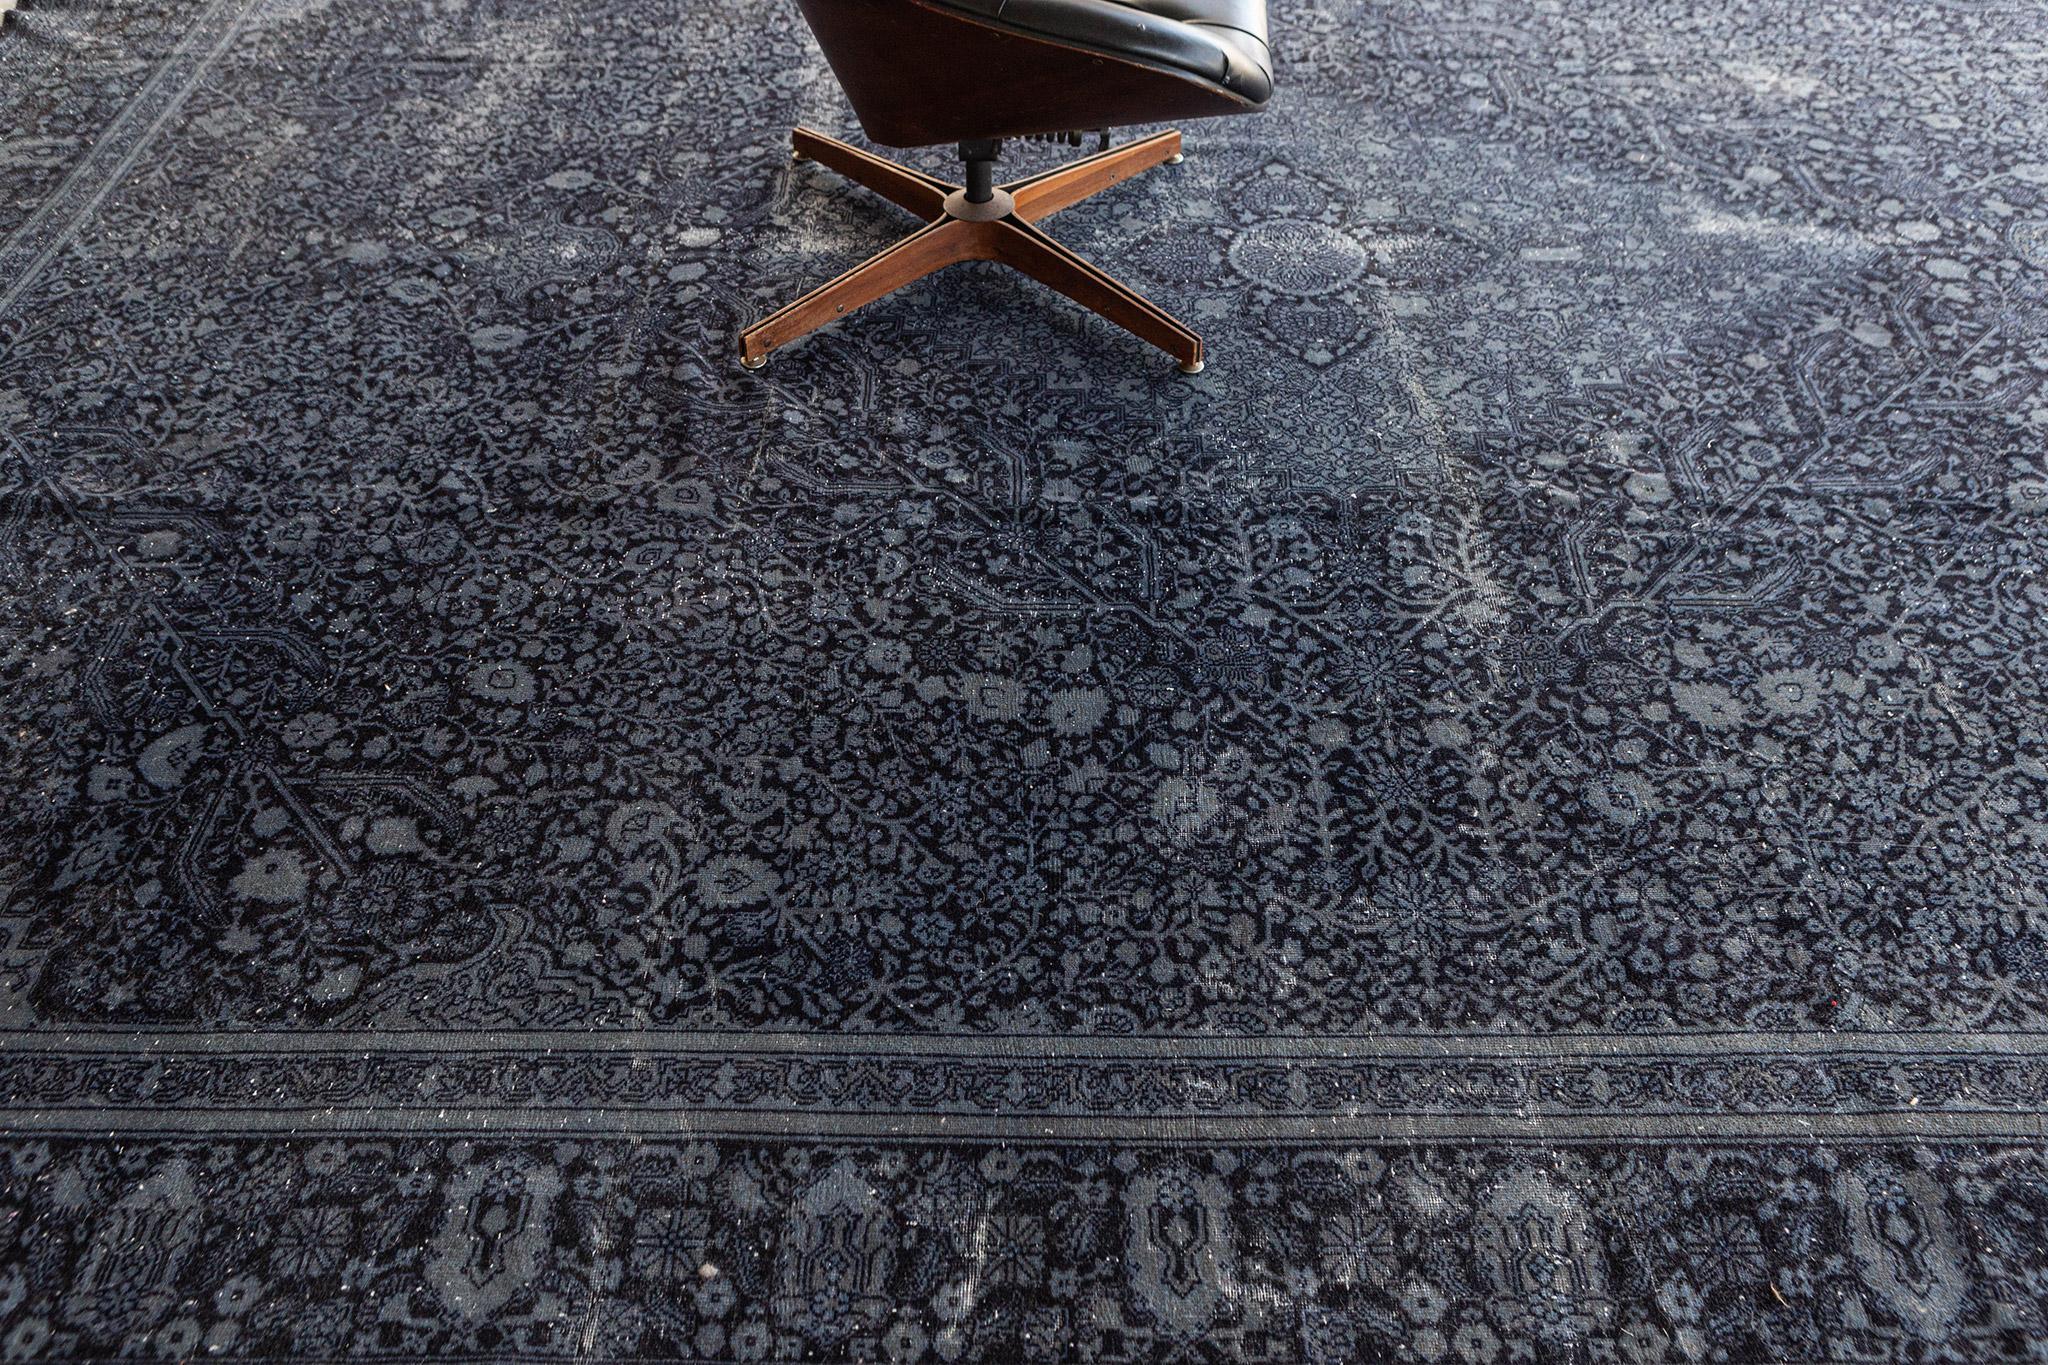 Les tapis Eleg comme celui-ci sont des tapis décoratifs de qualité supérieure pour les intérieurs qui requièrent une touche formelle et élégante. Ce tapis contient un médaillon en forme de diamant avec des motifs floraux et de vigne sur tout le